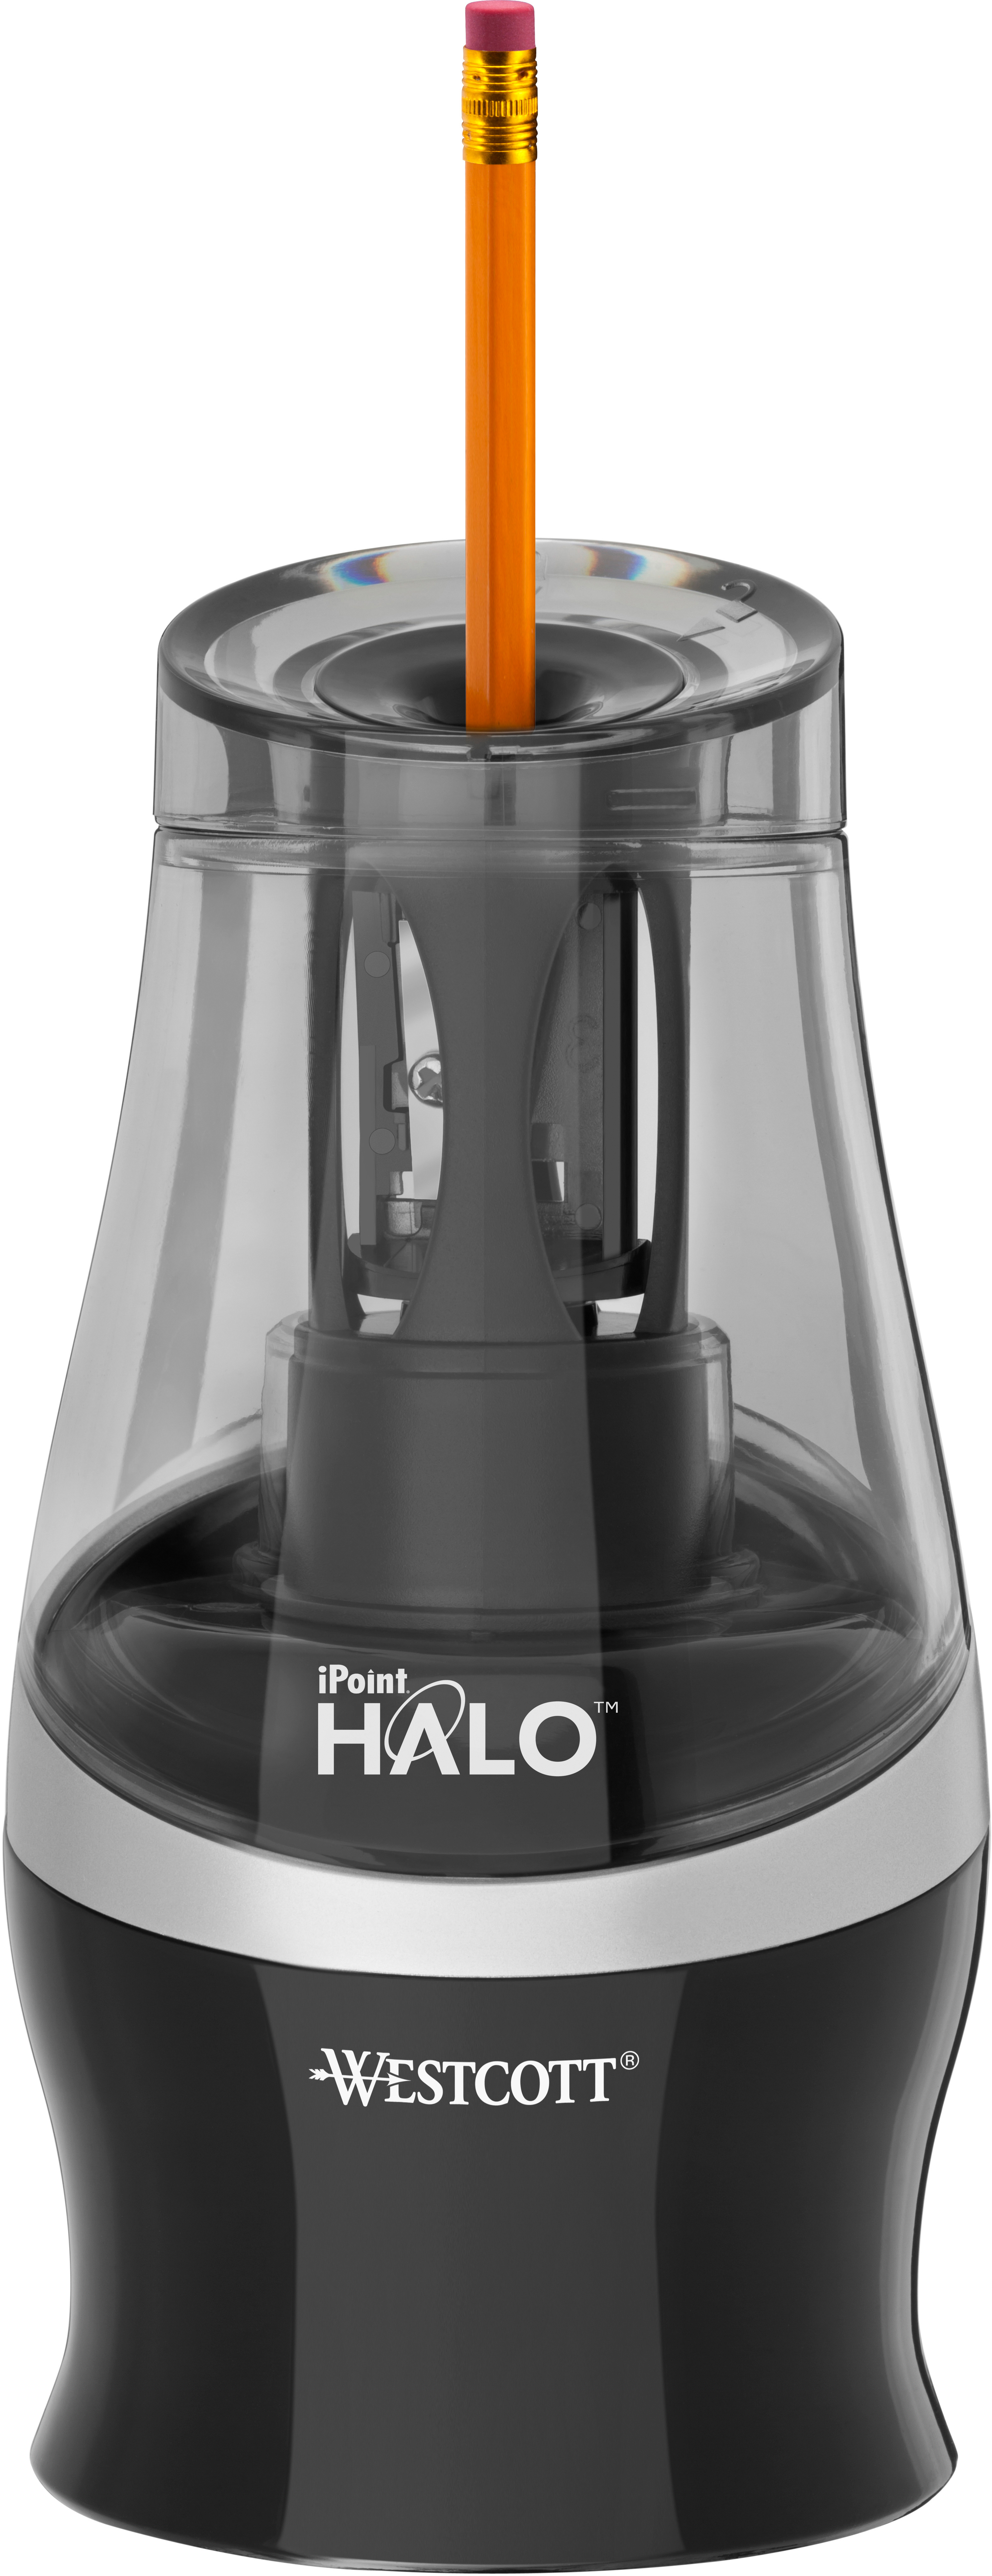 WESTCOTT Taille-crayon iPoint Halo E-55050 00 noir électronique